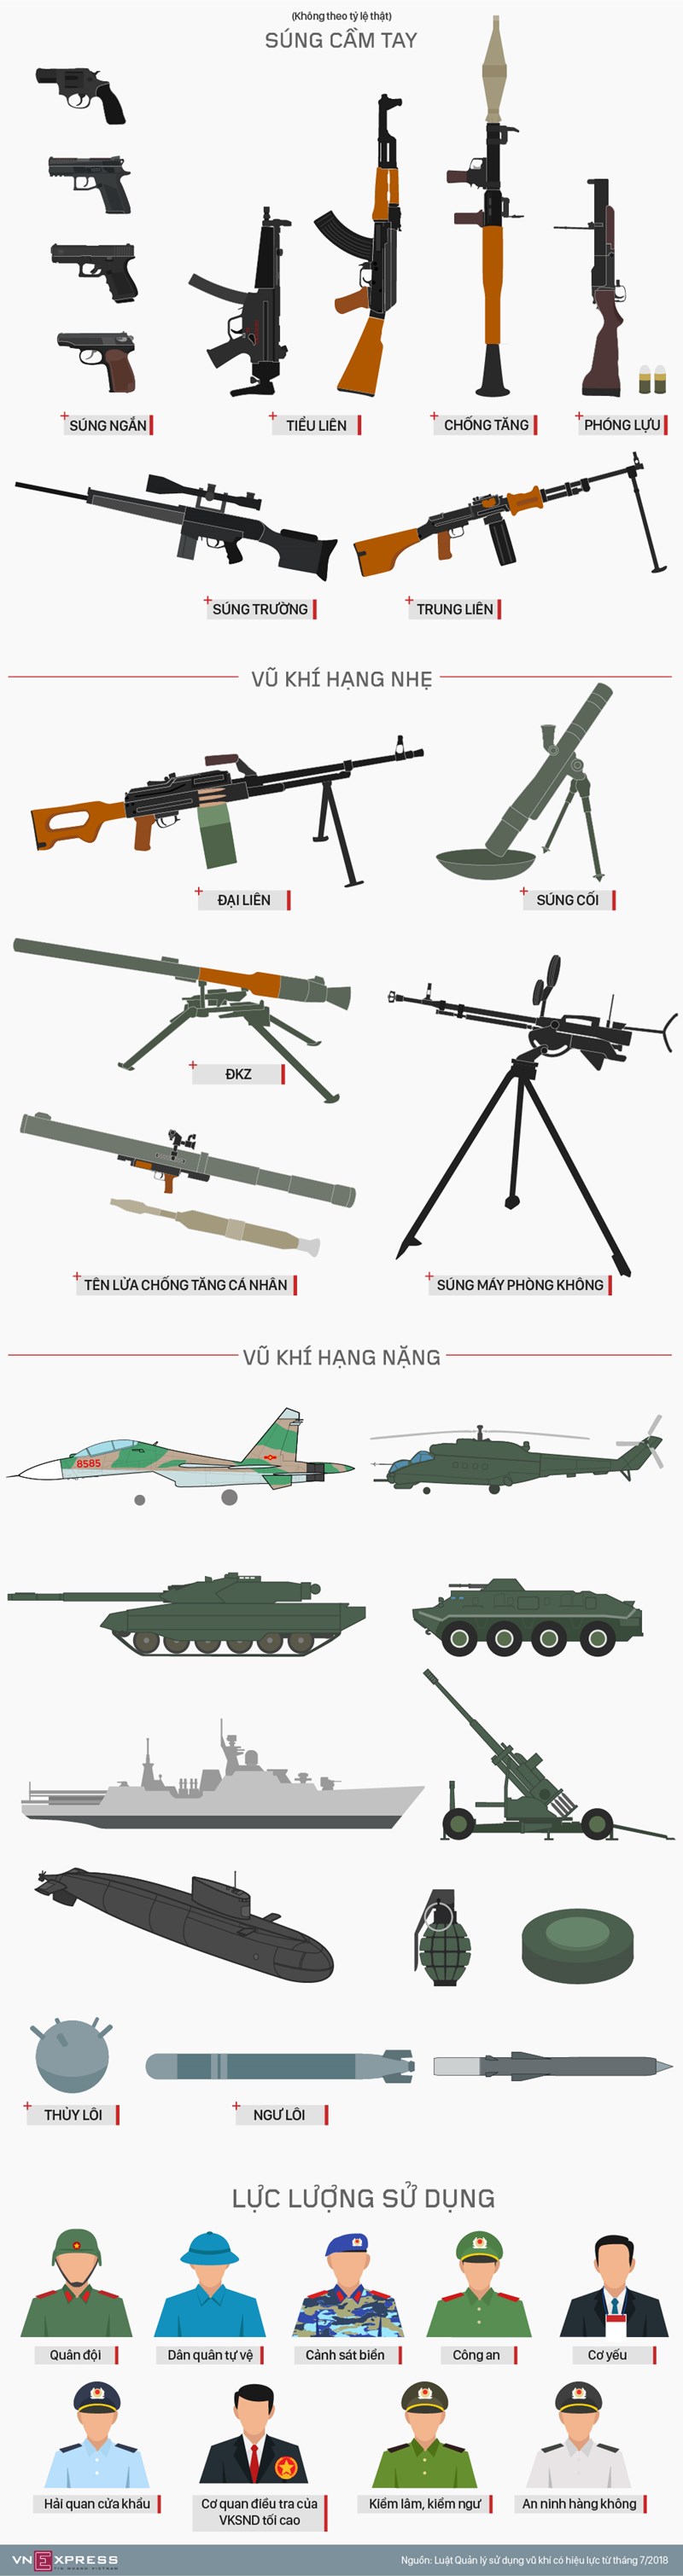 [Infographic] Những vũ khí quân dụng trang bị cho công an, bộ đội theo luật mới - Ảnh 1